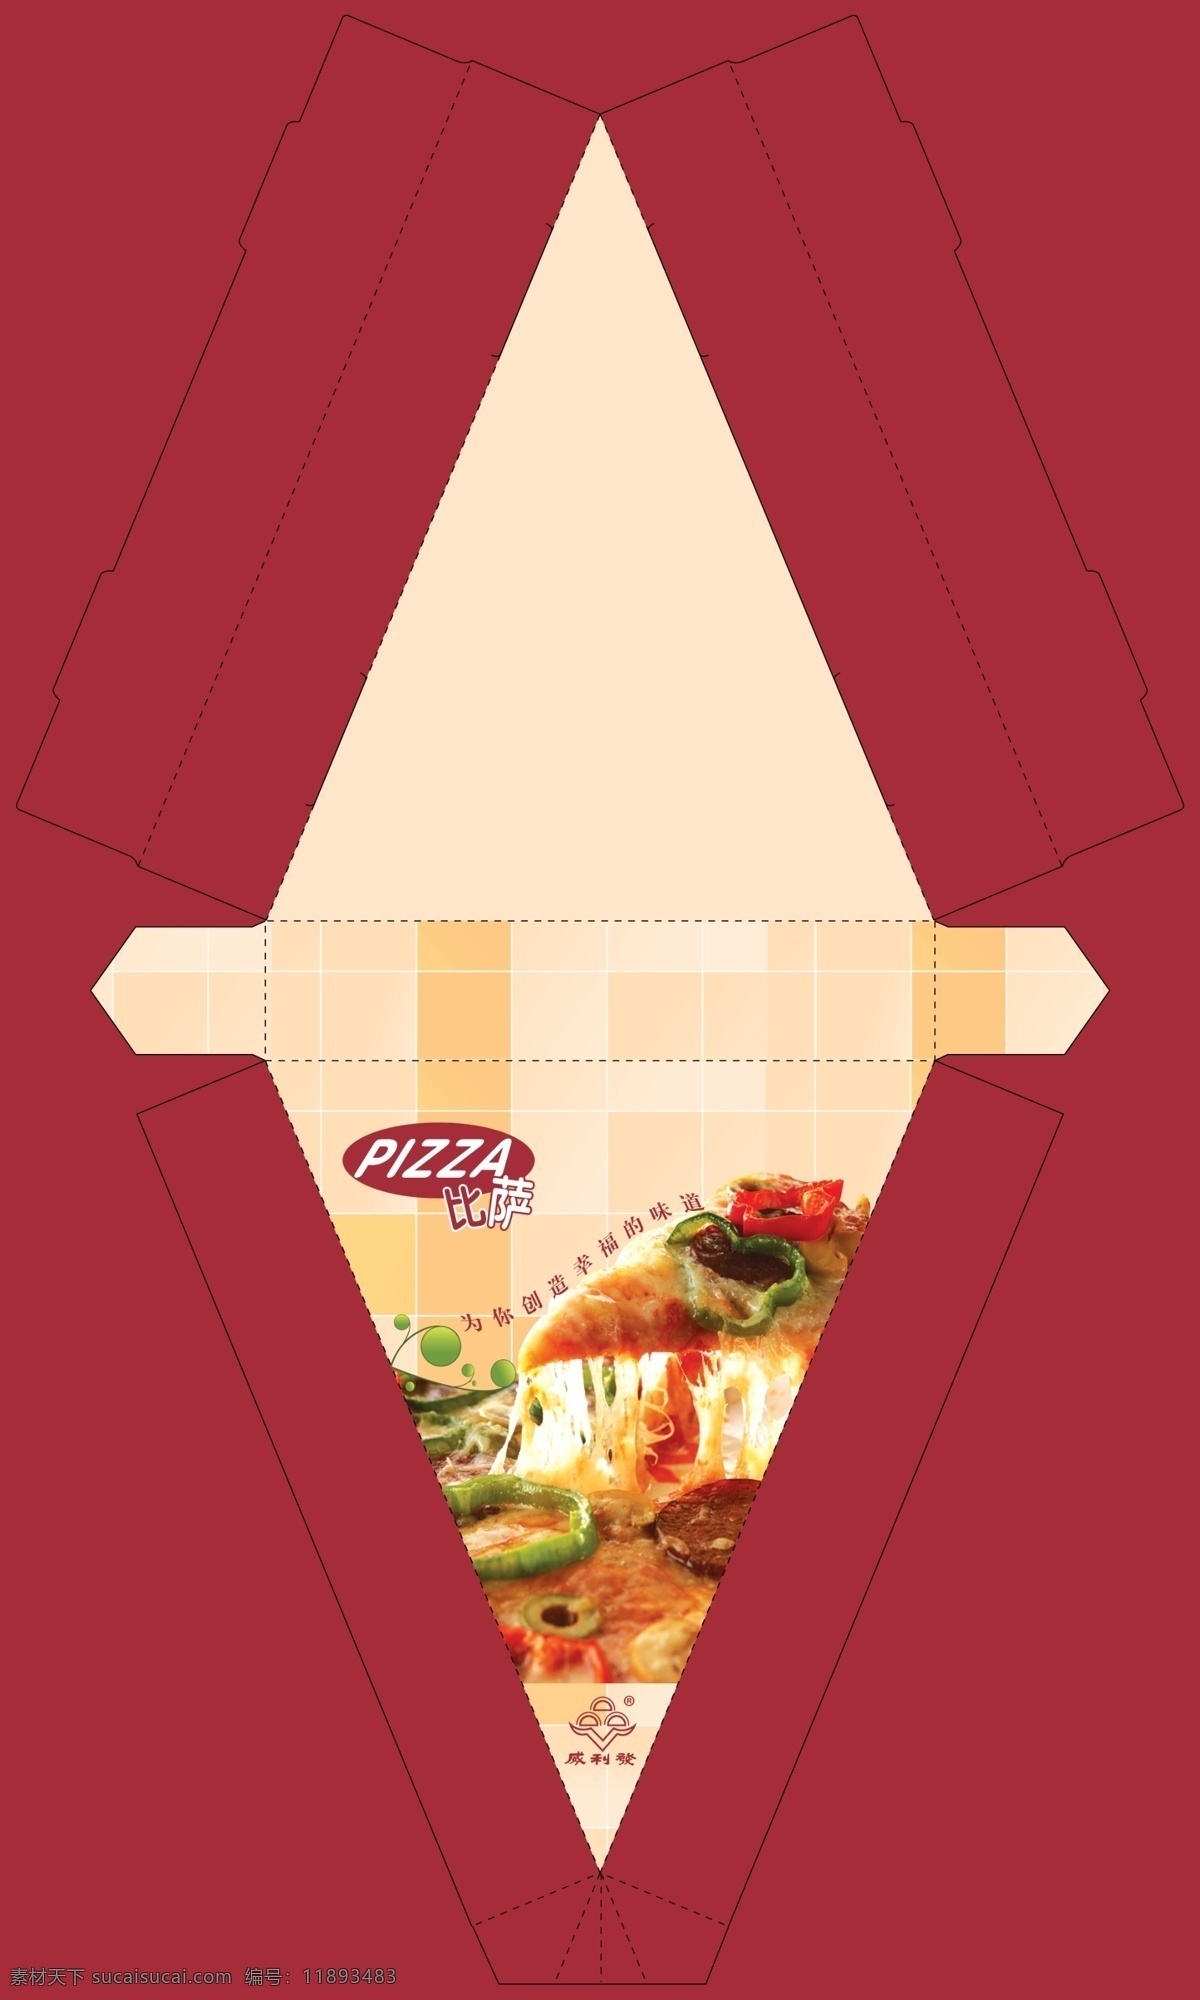 披萨包装设计 披萨盒 三角披萨盒 披萨三角盒 三角盒 披萨盒刀版 三角盒刀版 威力发 威力发披萨 威力发盒 威力发标志 包装设计 广告设计模板 源文件